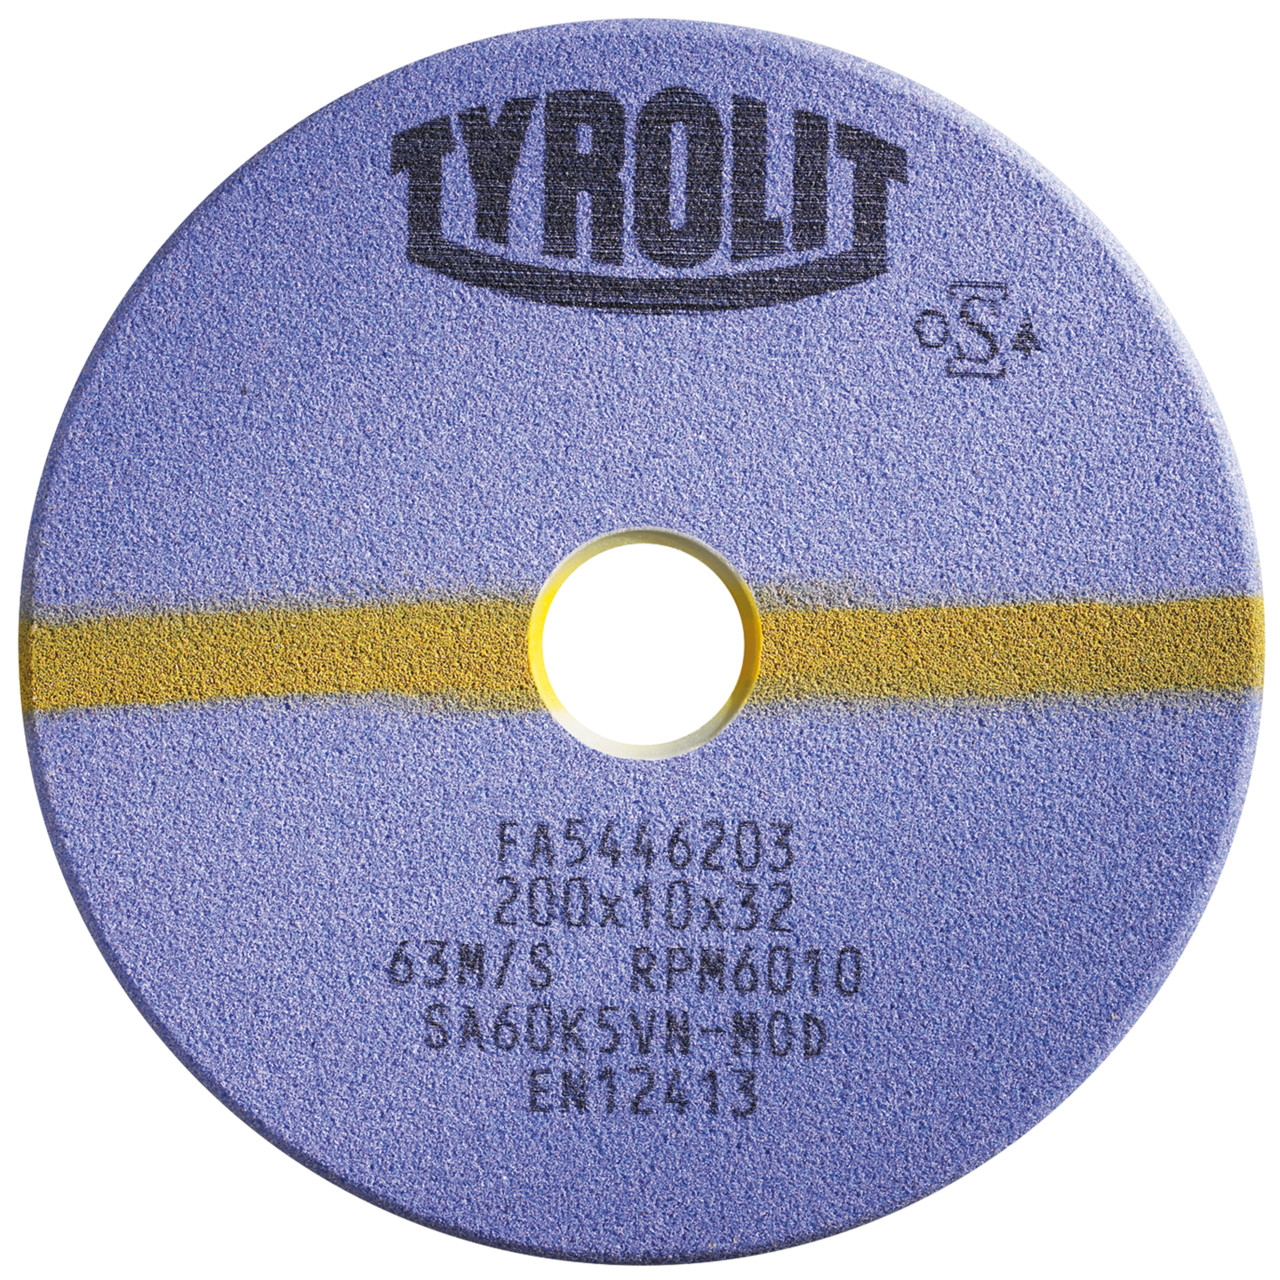 Tyrolit Slijpgereedschap voor automatische zaagslijpers DxDxH 150x4x20 Voor cirkelzagen en gesteriliseerde band- en lintzagen, vorm: 1C, Art. 19117